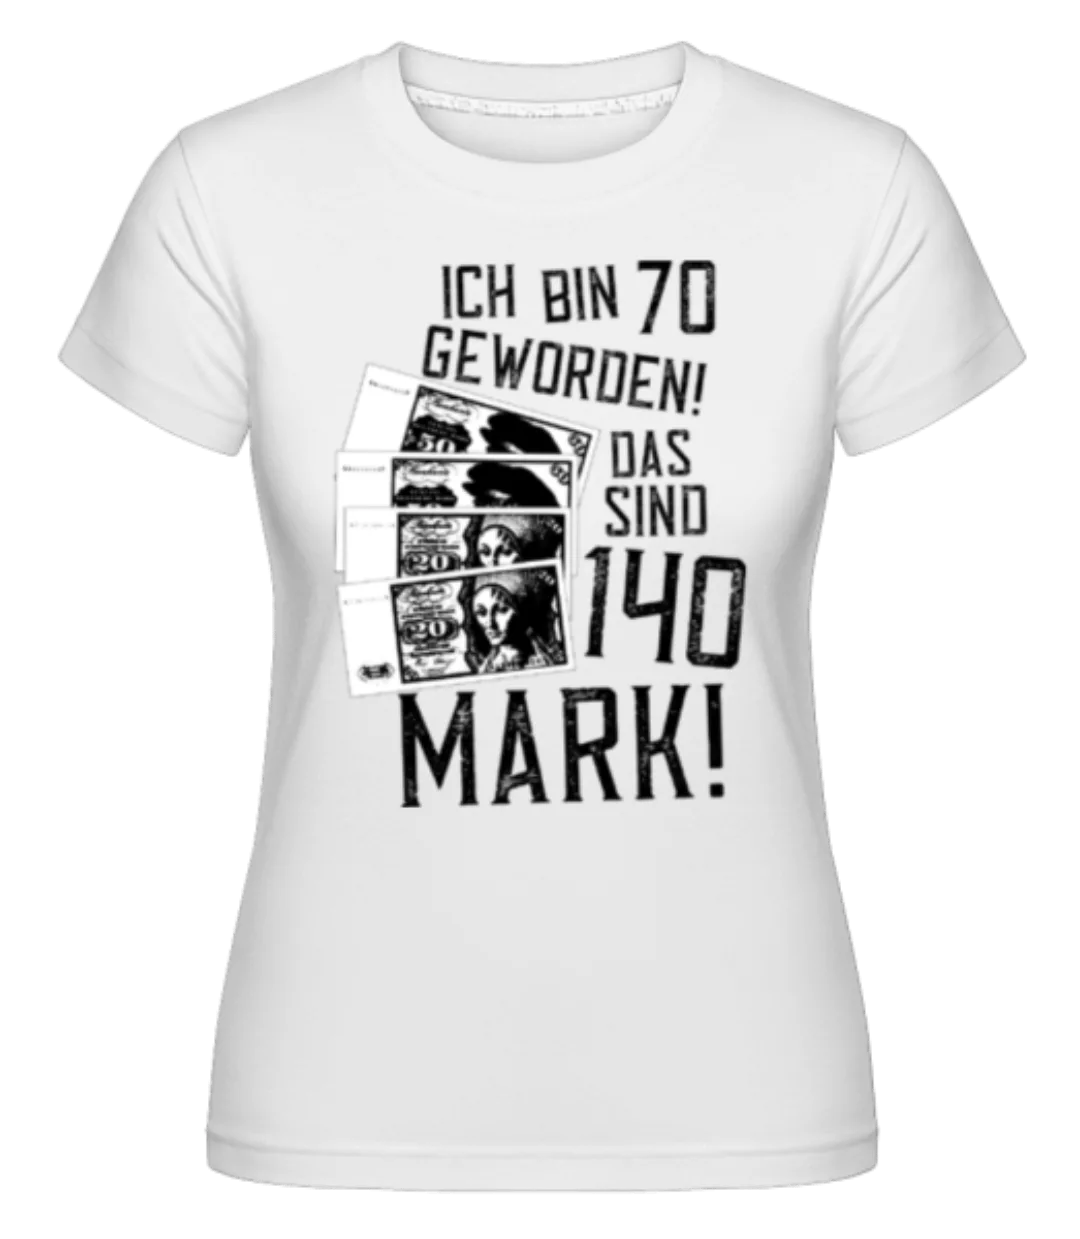 Bin 70 140 Mark · Shirtinator Frauen T-Shirt günstig online kaufen